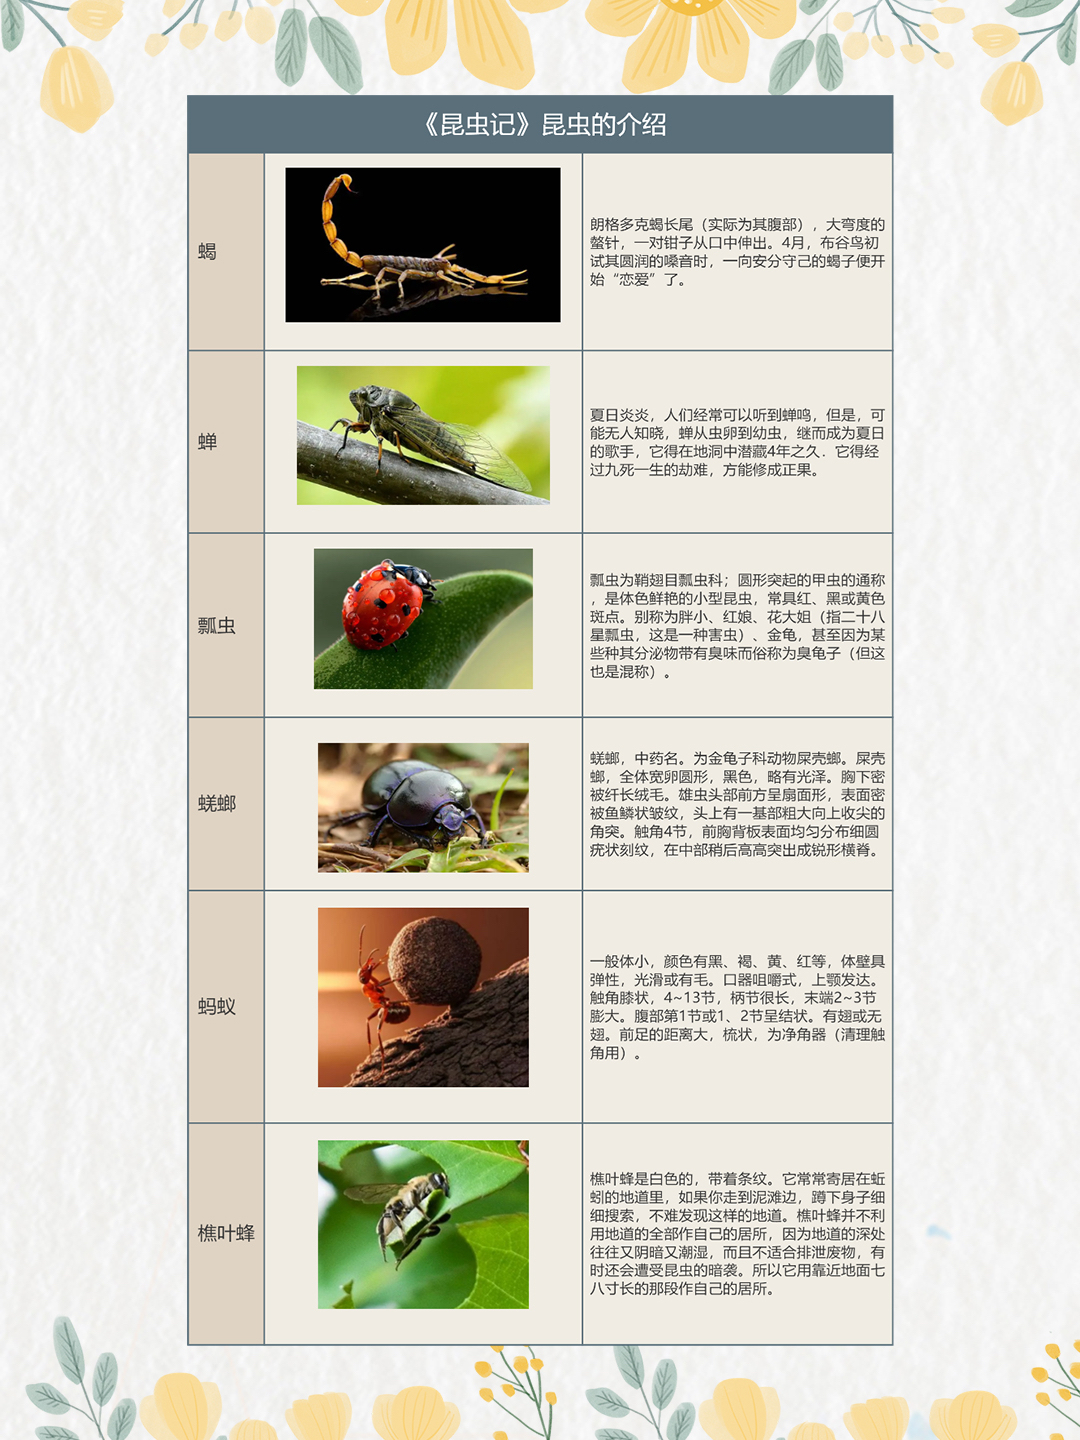 昆虫的照片和名字图片